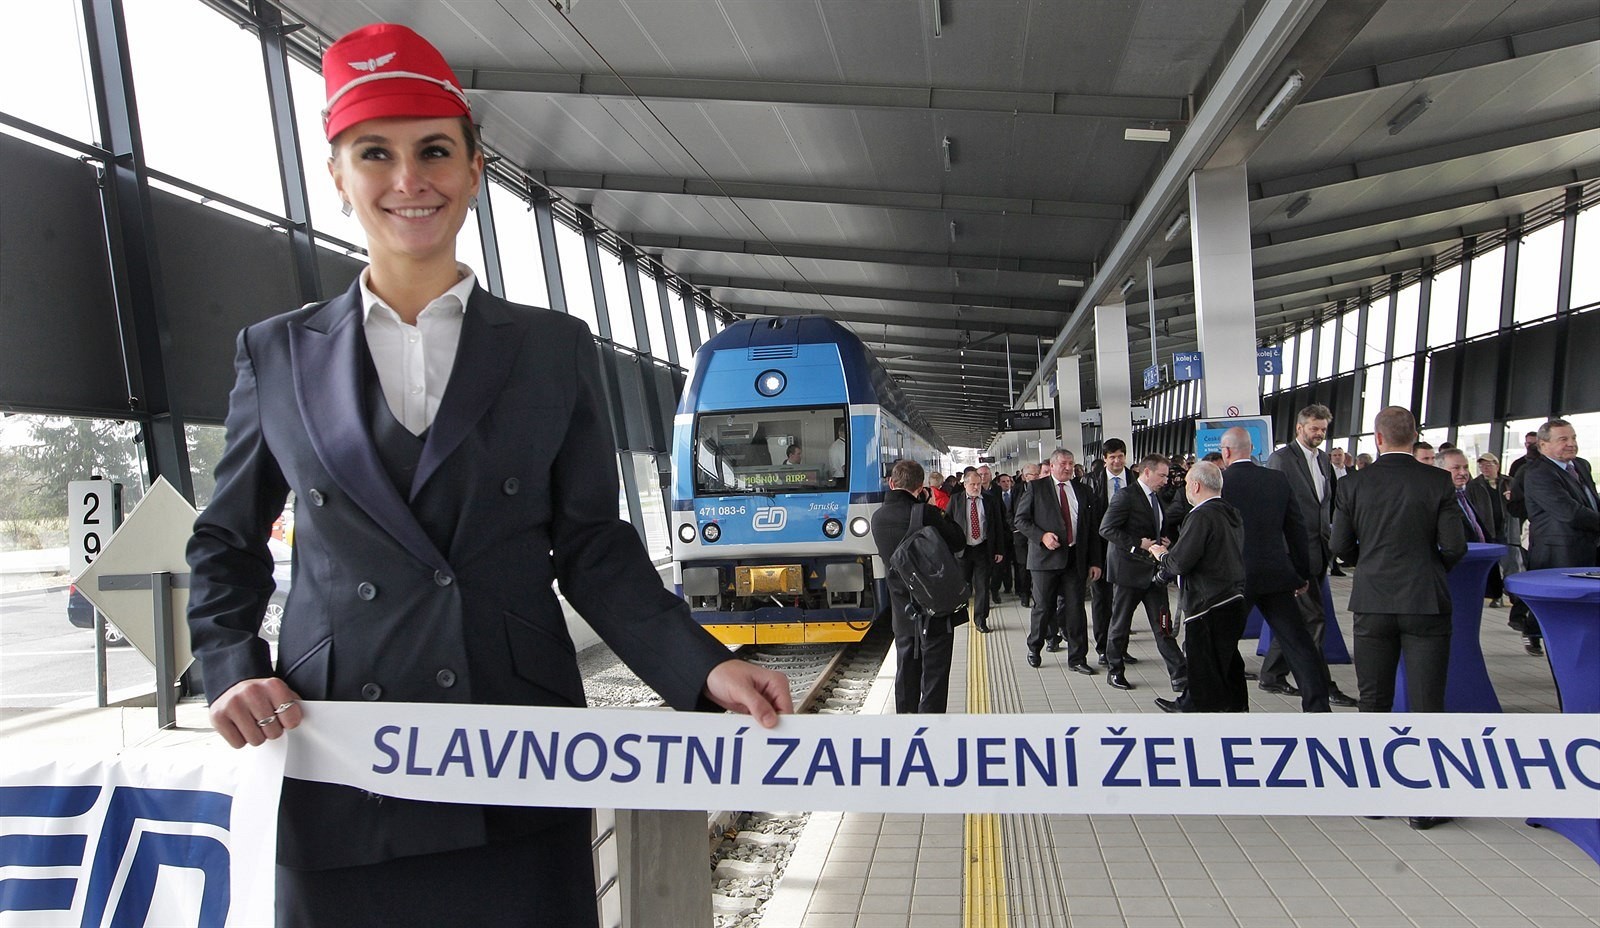 Dostať sa vlakom z centra mesta priamo na letisko je štandard väčšiny veľkých európskych veľkomiest. Na Slovensku a v Česku to však ani zďaleka neplatí. Vlakové spojenie k lietadlu by ste sotva hľadali v Prahe, Brne, Bratislave či Košiciach. Jedinou výnimkou na území bývalého Československa je Ostrava. Vlani tam slávnostne otvorili trojkilometrovú železničnú prípojku k letisku v Mošnove. Má to však háčik.

Letisko Ostrava-Mošnov denne prepraví v priemere pár stoviek cestujúcich na troch či štyroch pravidelných linkách. Tých má odviesť do mesta približne 10 vlakov s celkovou spiatočnou kapacitou 6-tisíc miest. Absurdistan po ostravsky. Málo letov v kombinácii s riedkym (ale mimoriadne “kapacitným”) vlakovým spojením a absenciou koordinácie znamená, že s vysokou pravdepodobnosťou zmeškáte spoj, alebo budete čakať tak dlho, že si radšej zavoláte taxík. 

Jedným z argumentov v prospech novej trate by mohla byť priemyselná zóna, ktorá sa nachádza blízko letiska. Čiastočne by teda nová trať mohla slúžiť aj jej zamestnancom. Argumentom môže byť aj budúcnosť a prípadný rozvoj letiska v Ostrave.

V každom prípade, v prospech “absurdistanu” hovorí aj fakt, že stavba za takmer miliardu českých korún bola z veľkej časty financovaná z eurofondov. A potvrdzujú to aj oficiálne miesta. „Keby nebolo dotácie, určite by sme o železnici neuvažovali. Je to veľmi nákladná investičná akcia,” priznal pre český denník MF Dnes zástupca hajtmana Moravskosliezkeho kraja Daniel Havlík (ČSSD).
